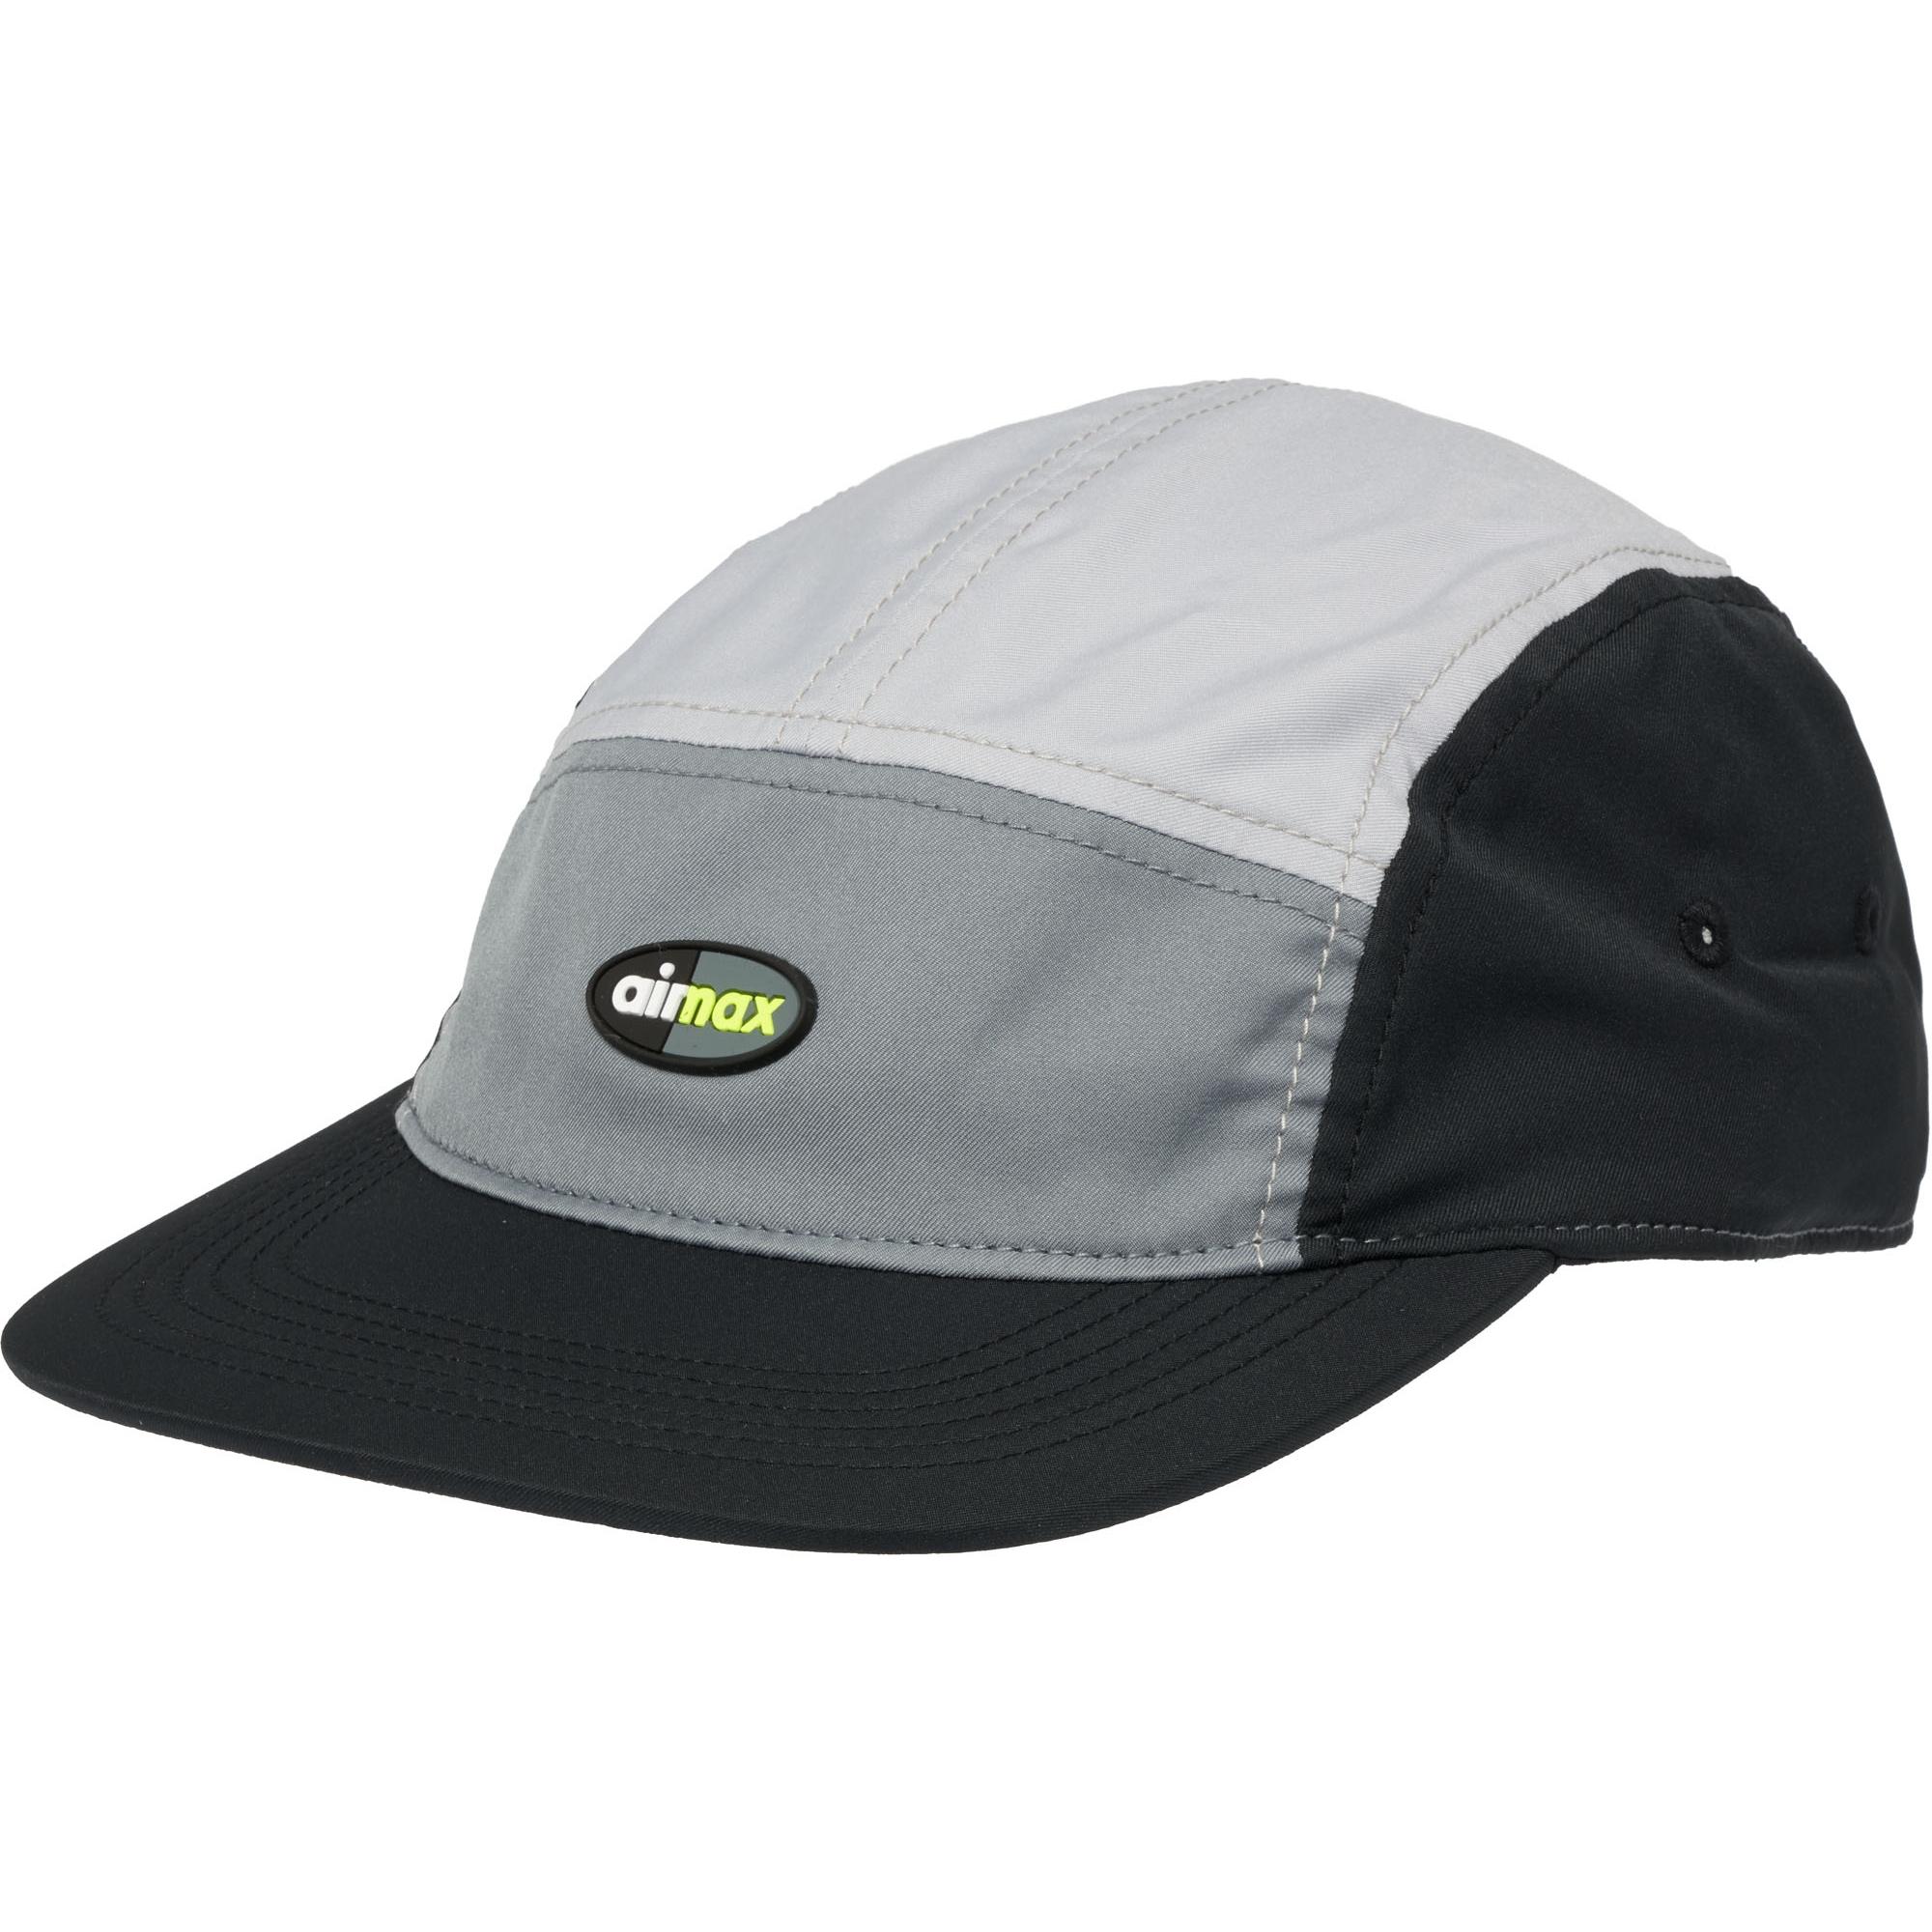 black air max hat